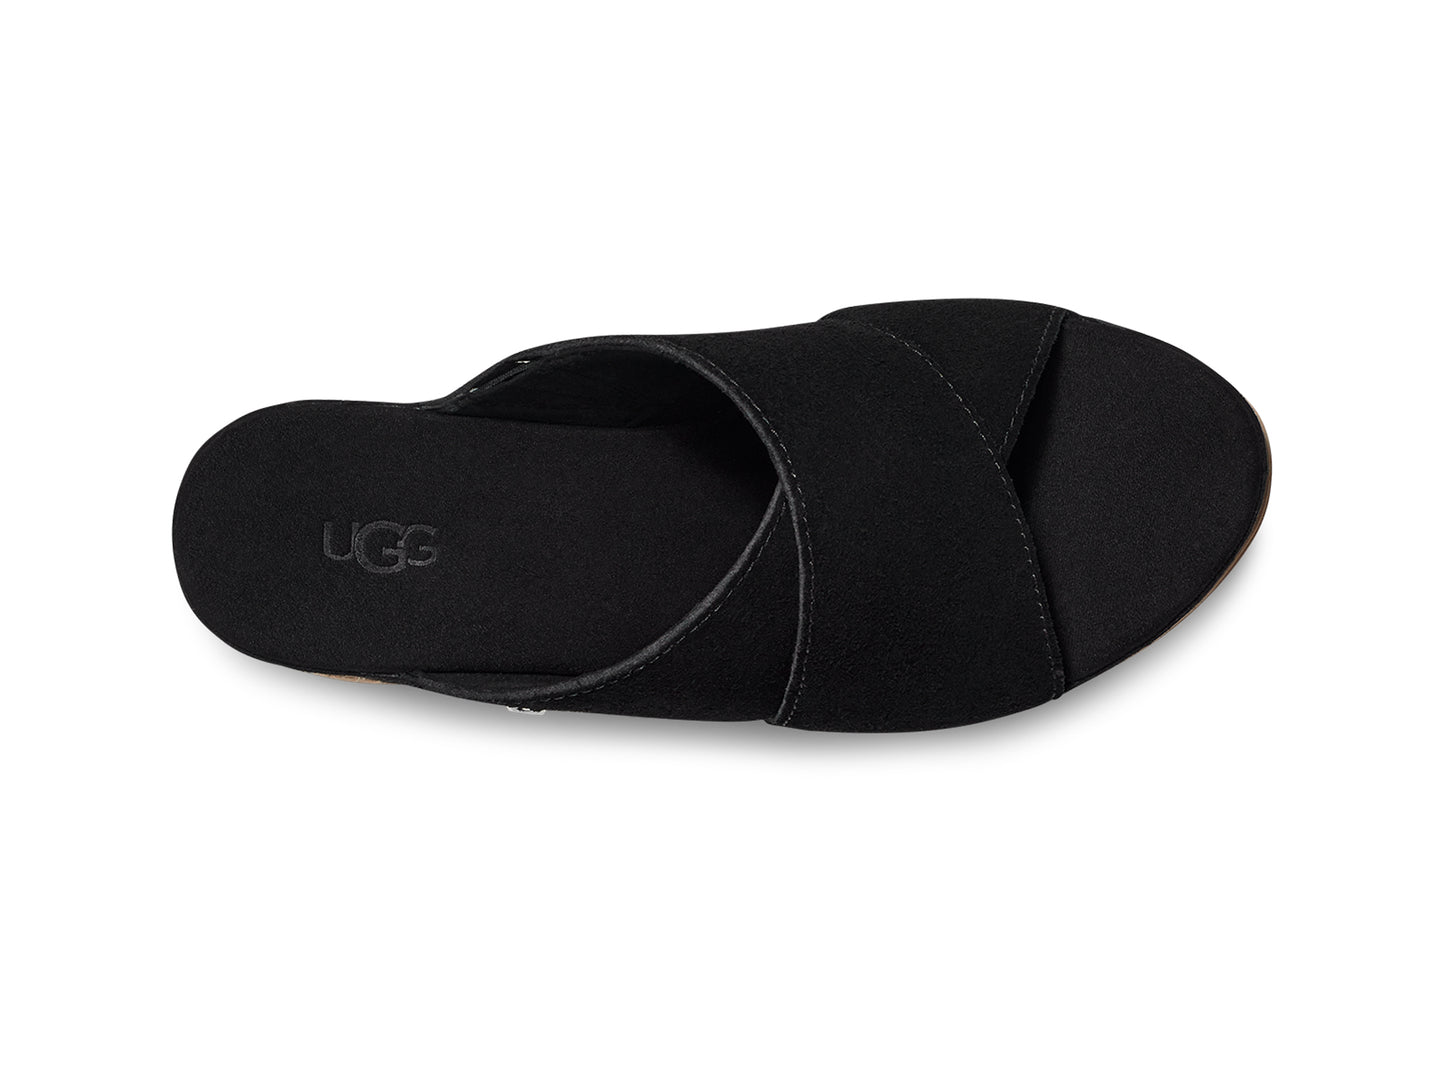 UGG Women's Abbot Slide Platform Sandal